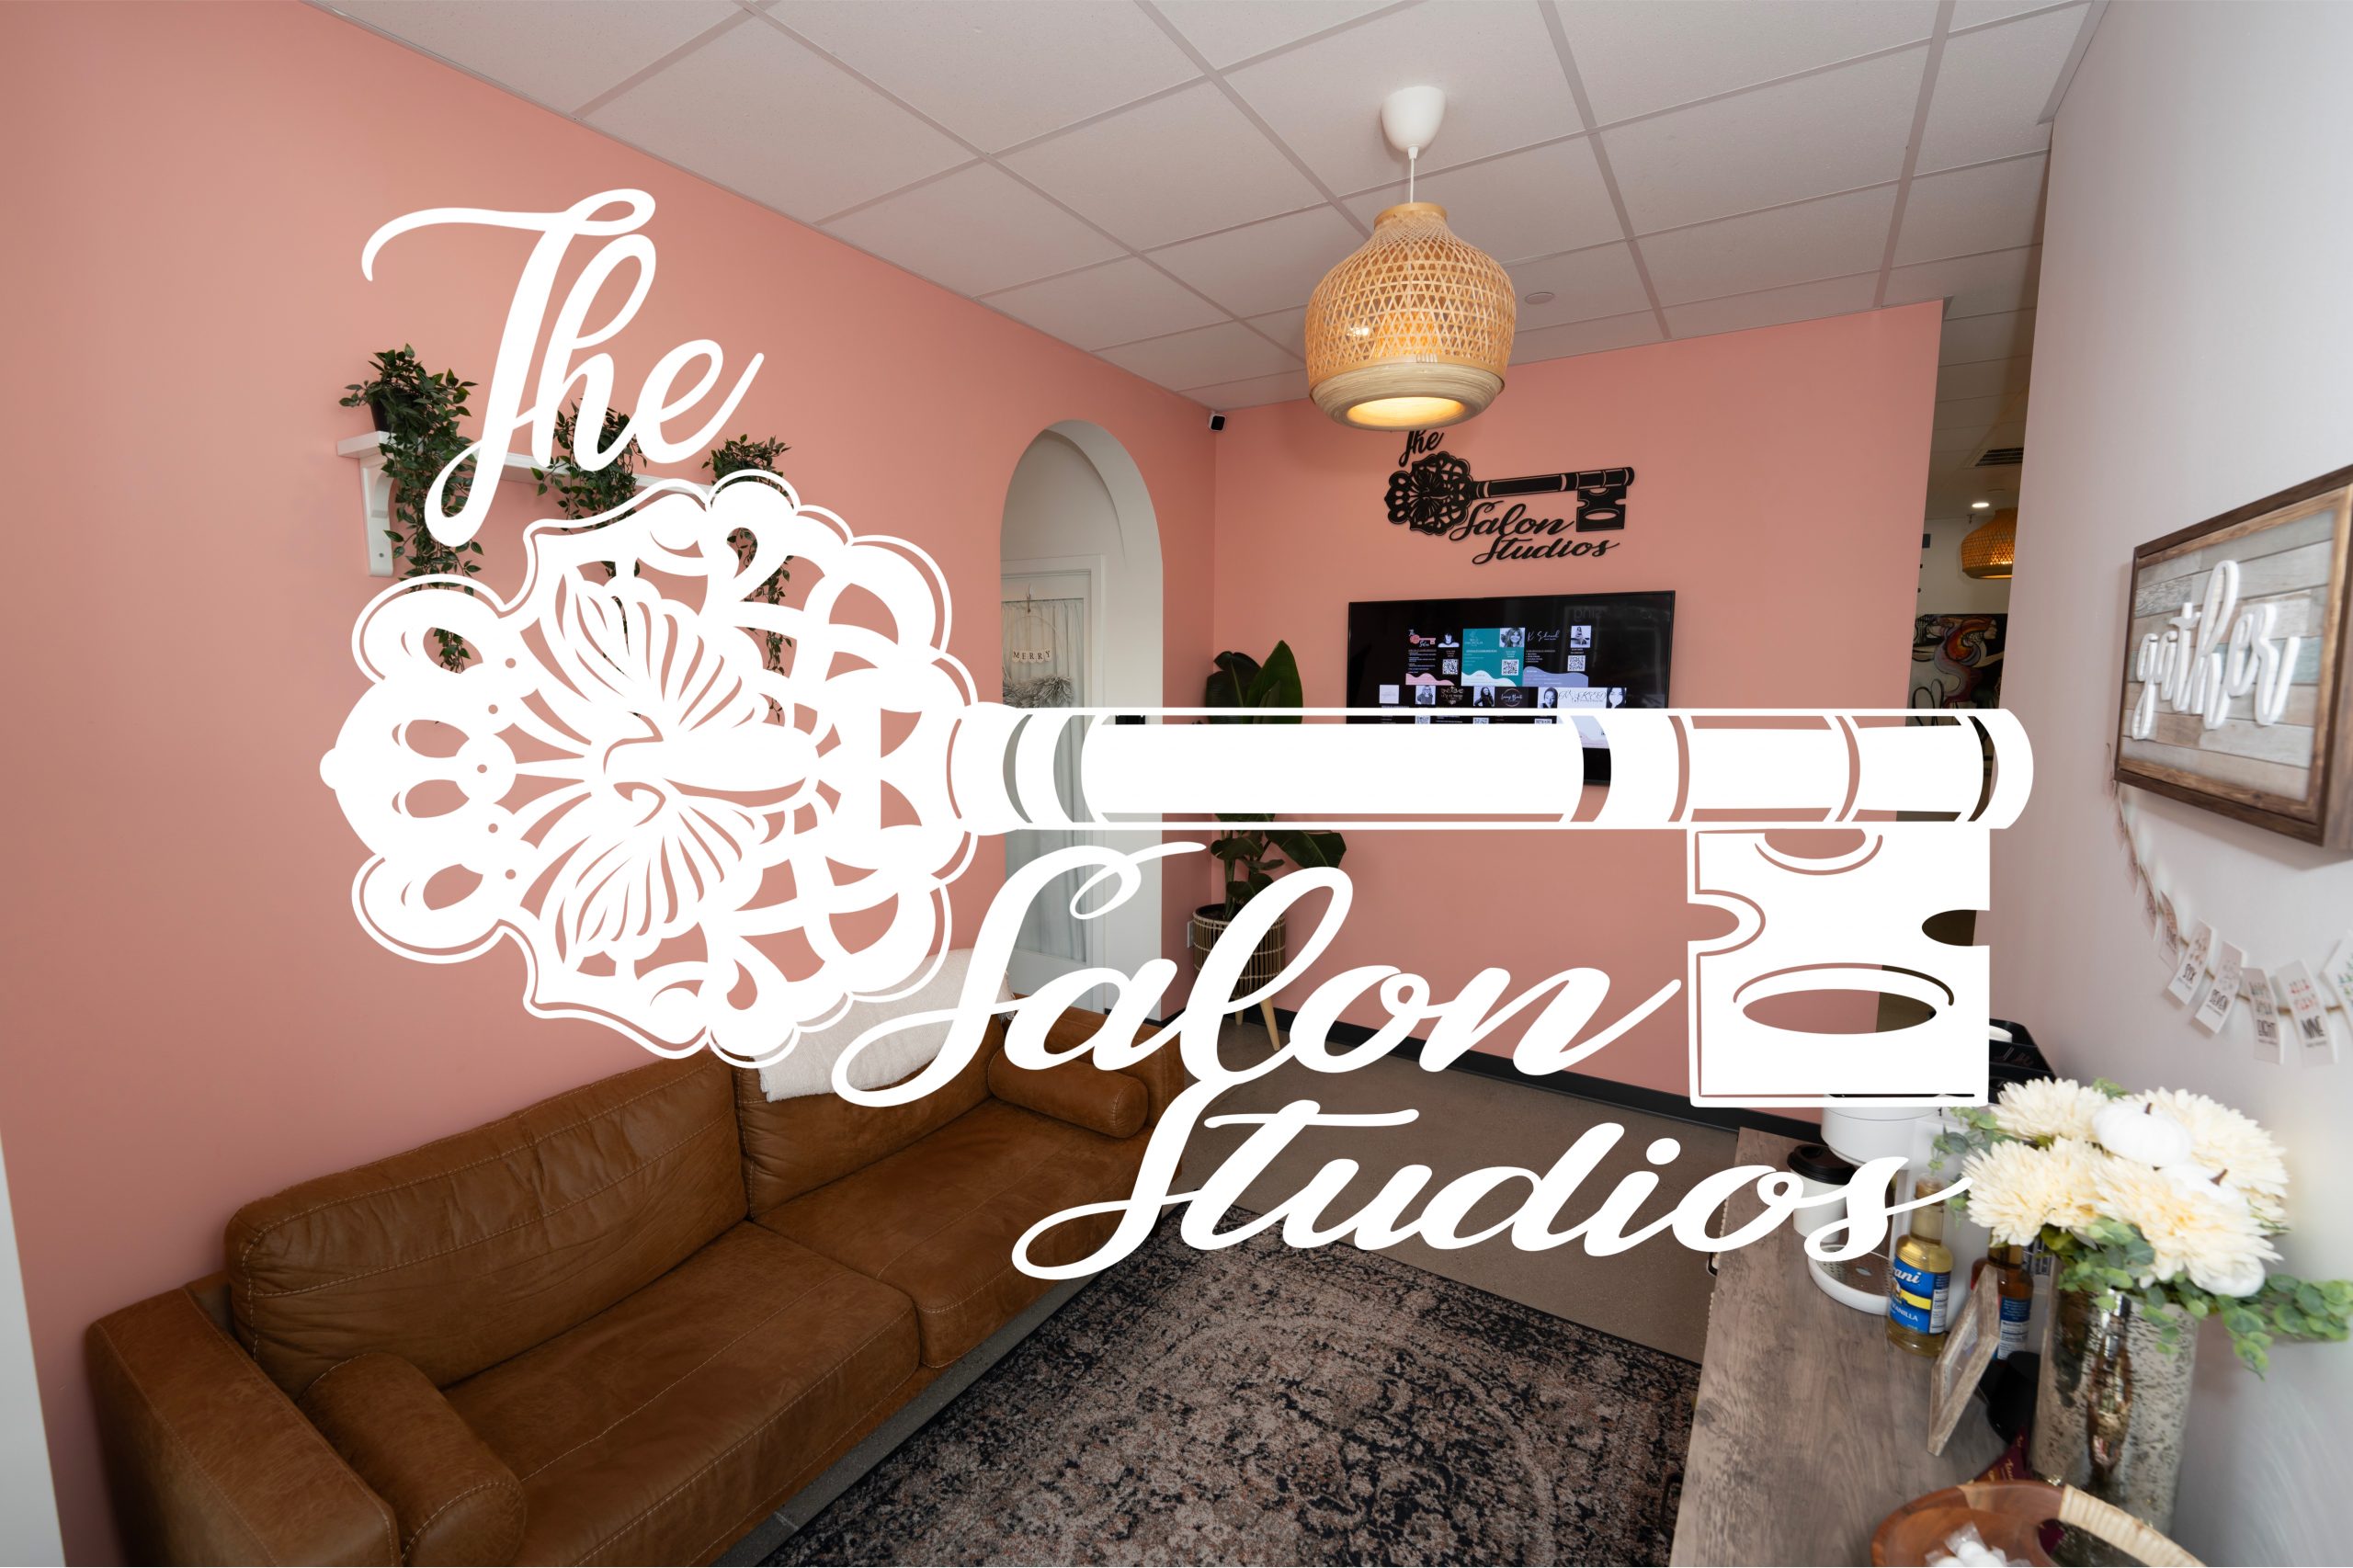 Key Salon Studios